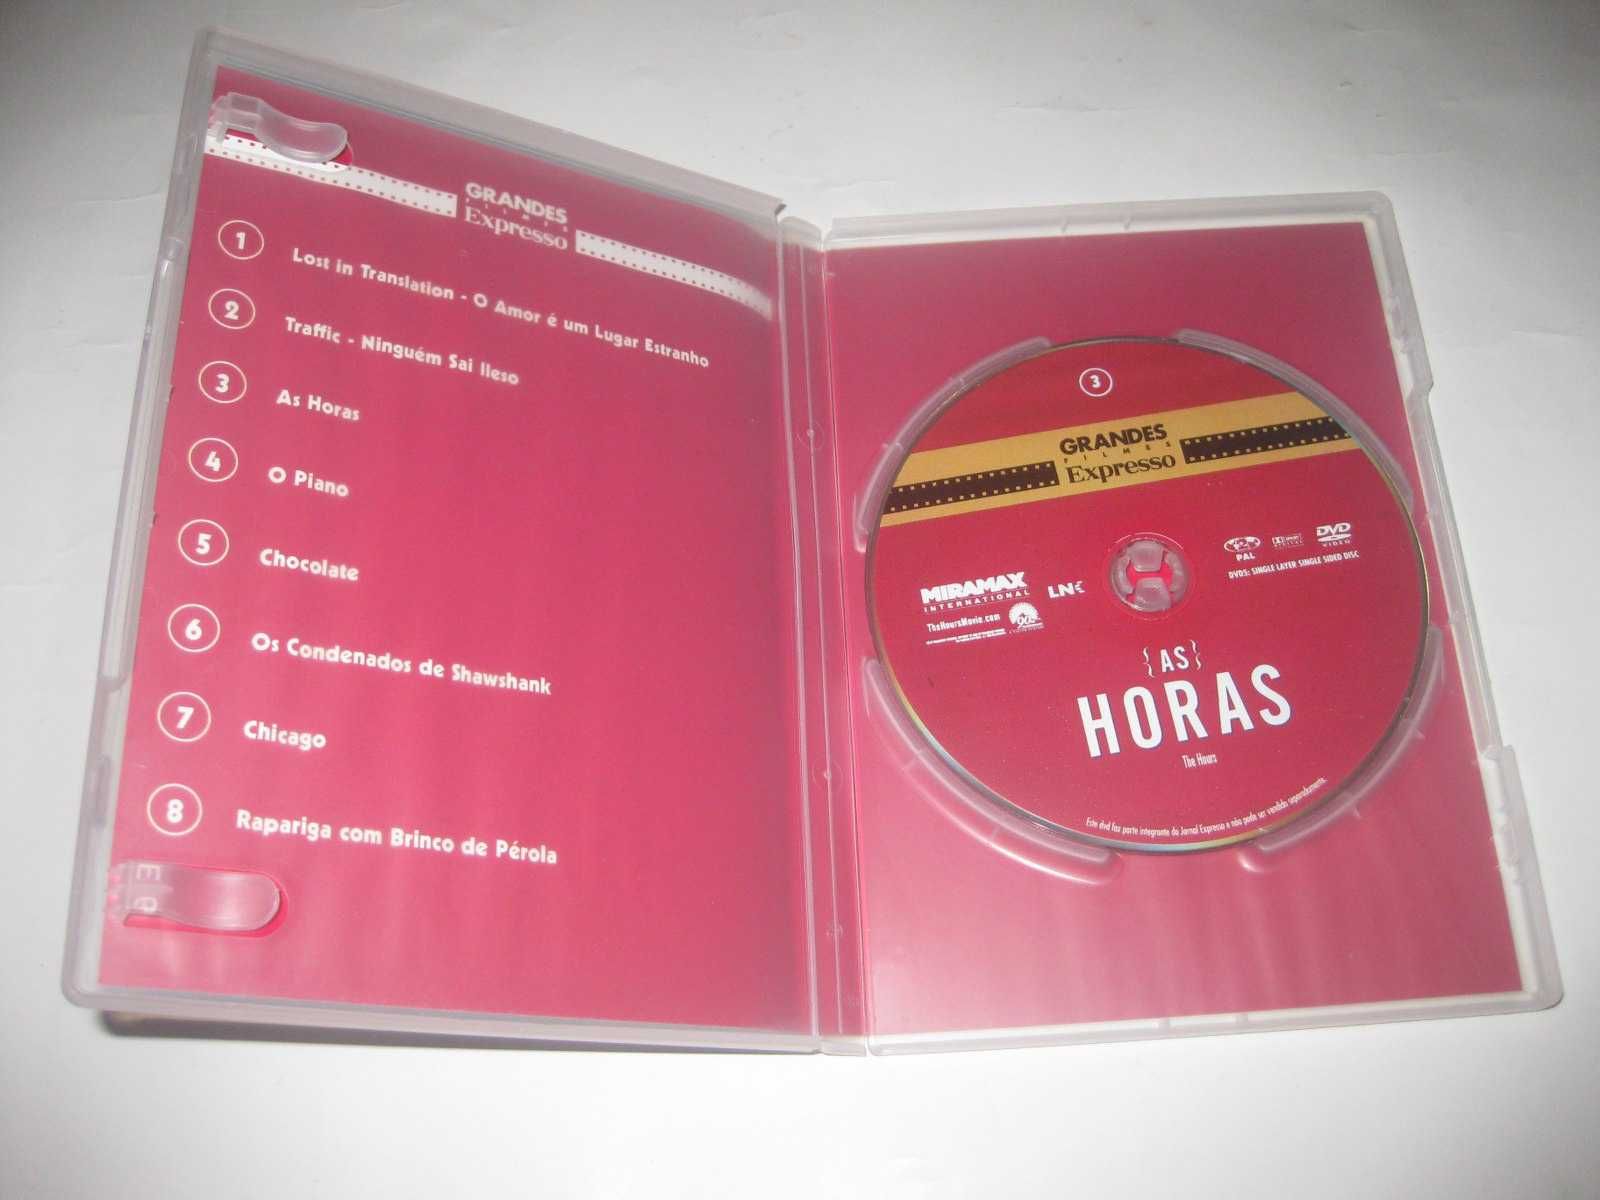 DVD "As Horas" com Nicole Kidman